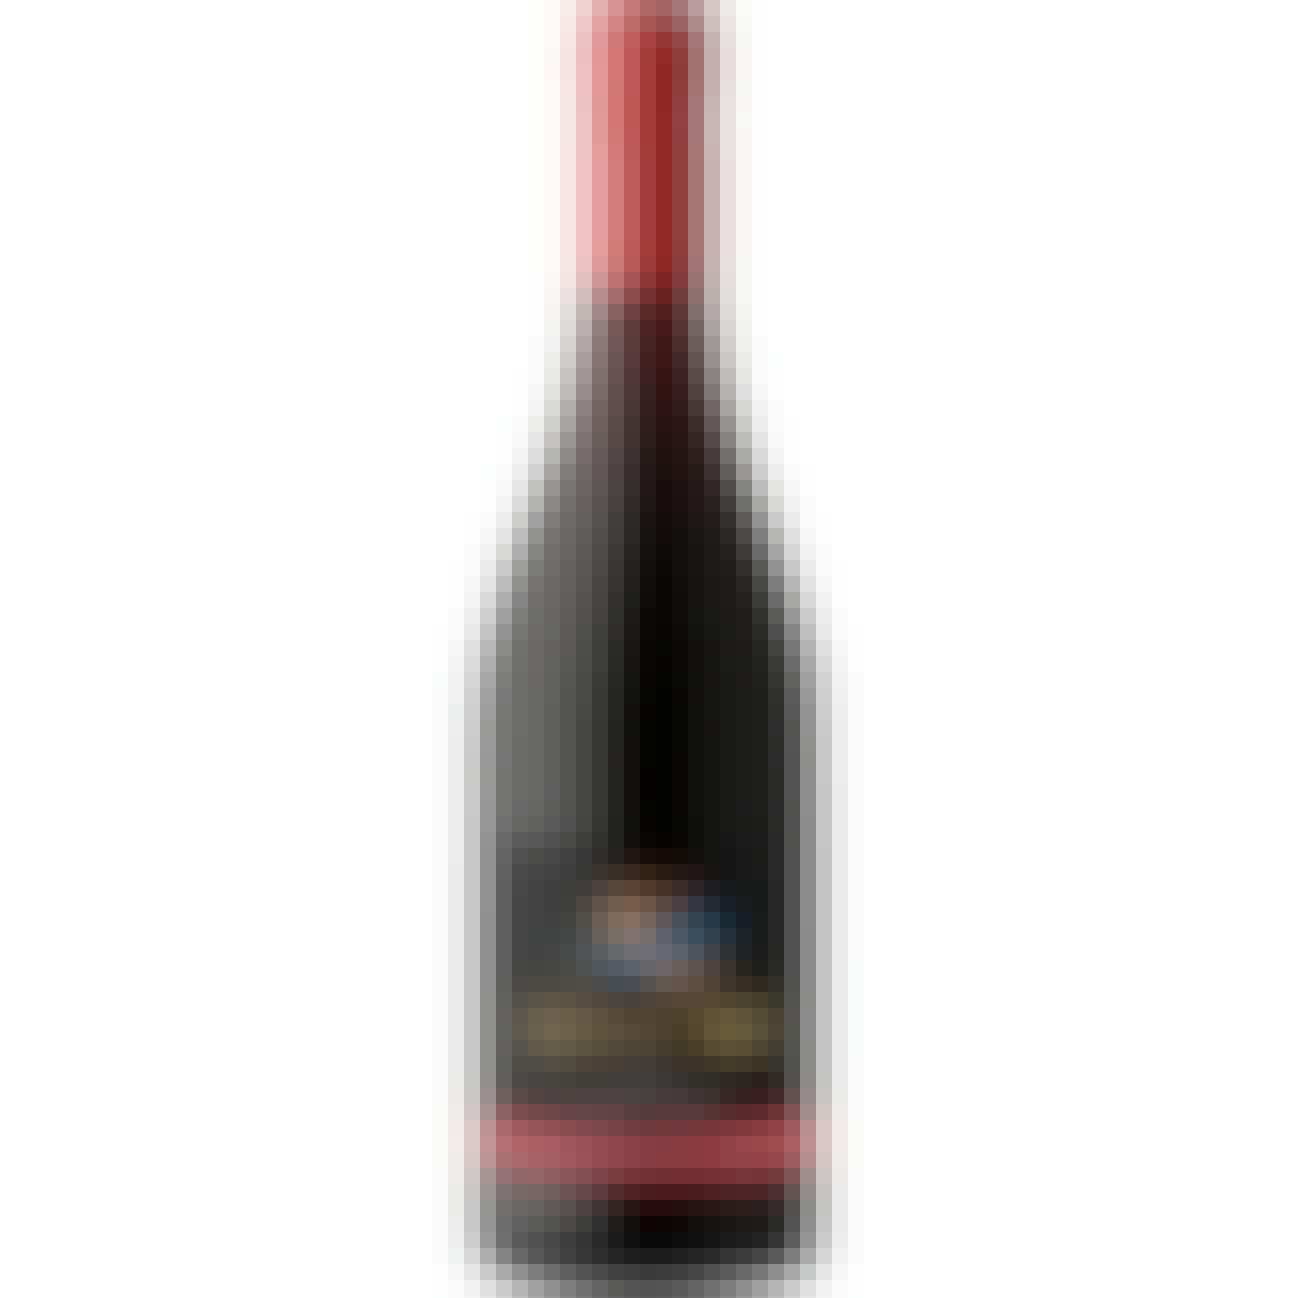 Siduri Santa Barbara Pinot Noir 2021 750ml